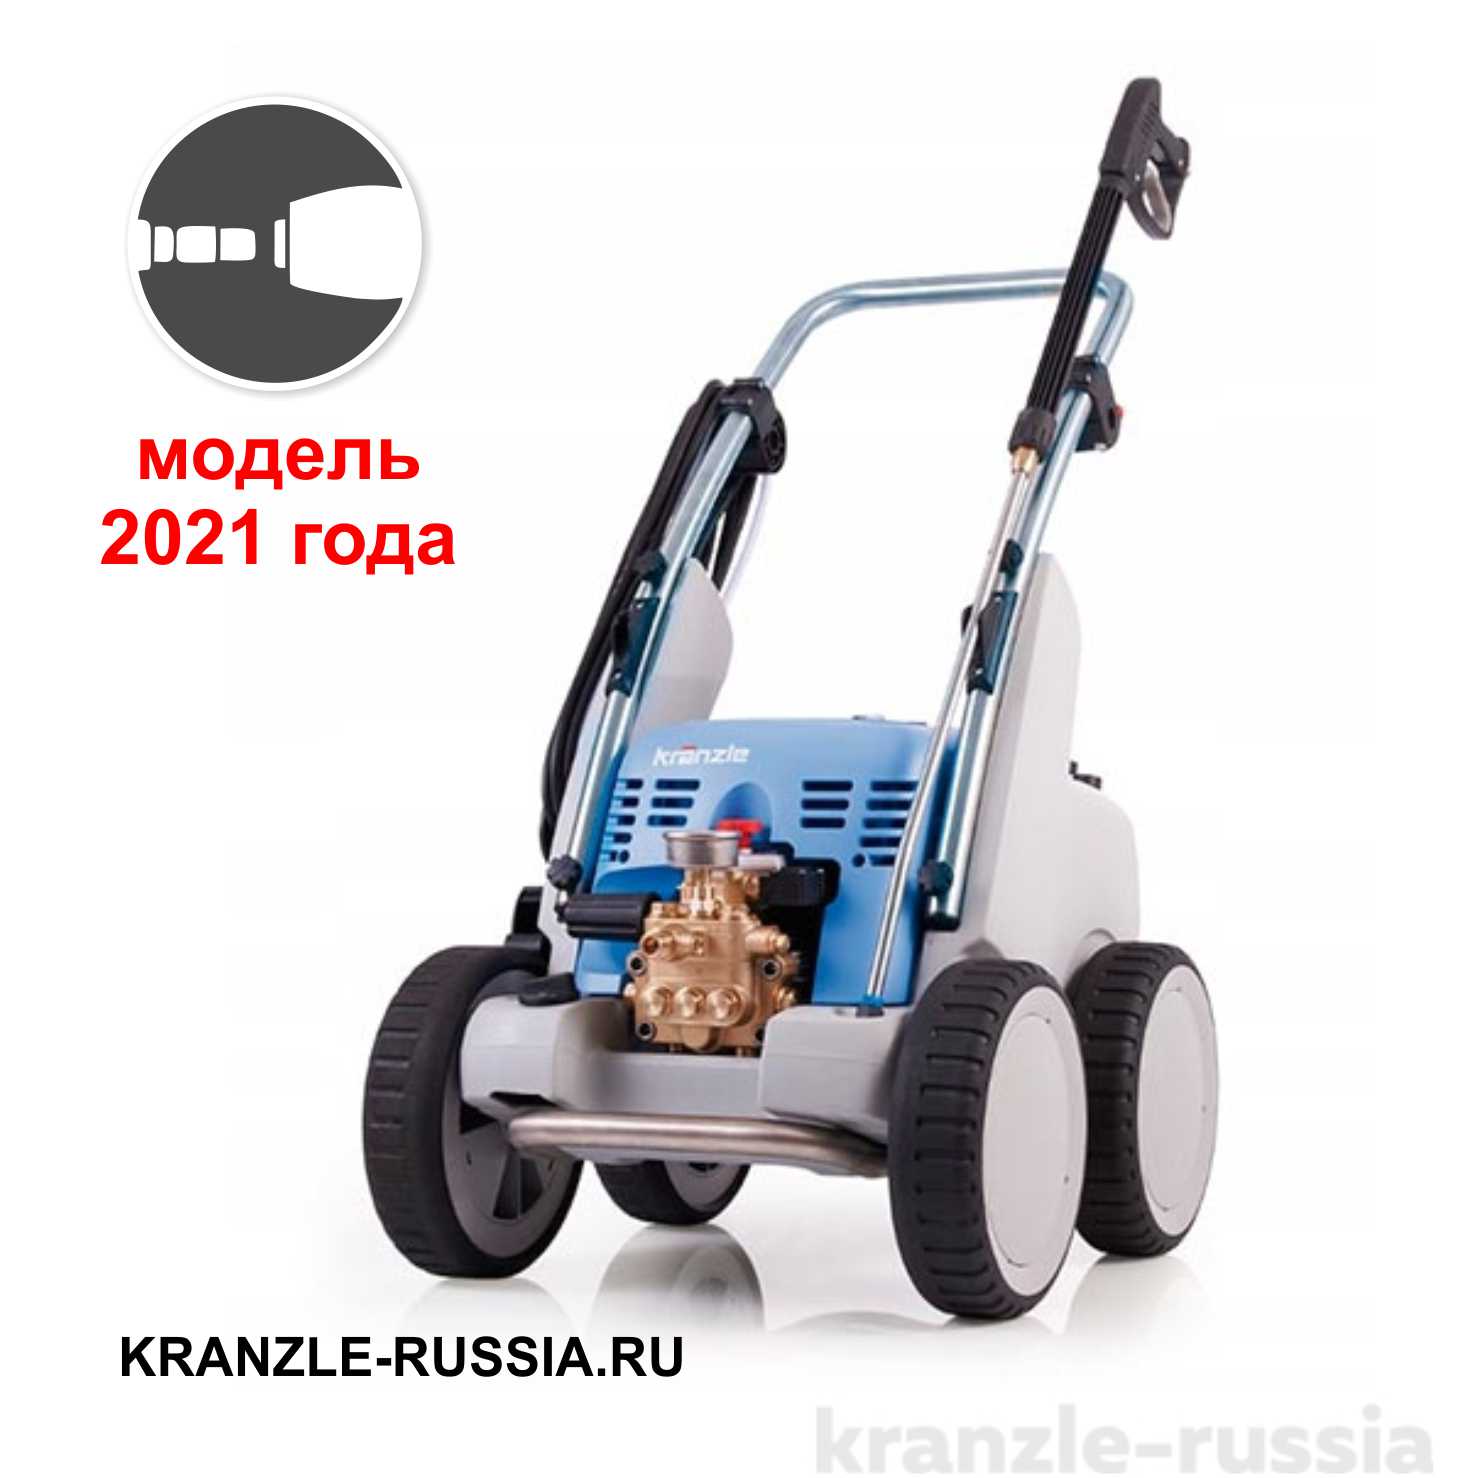 Профессиональная автомойка высокого давления Kranzle Quadro 1000 TS .